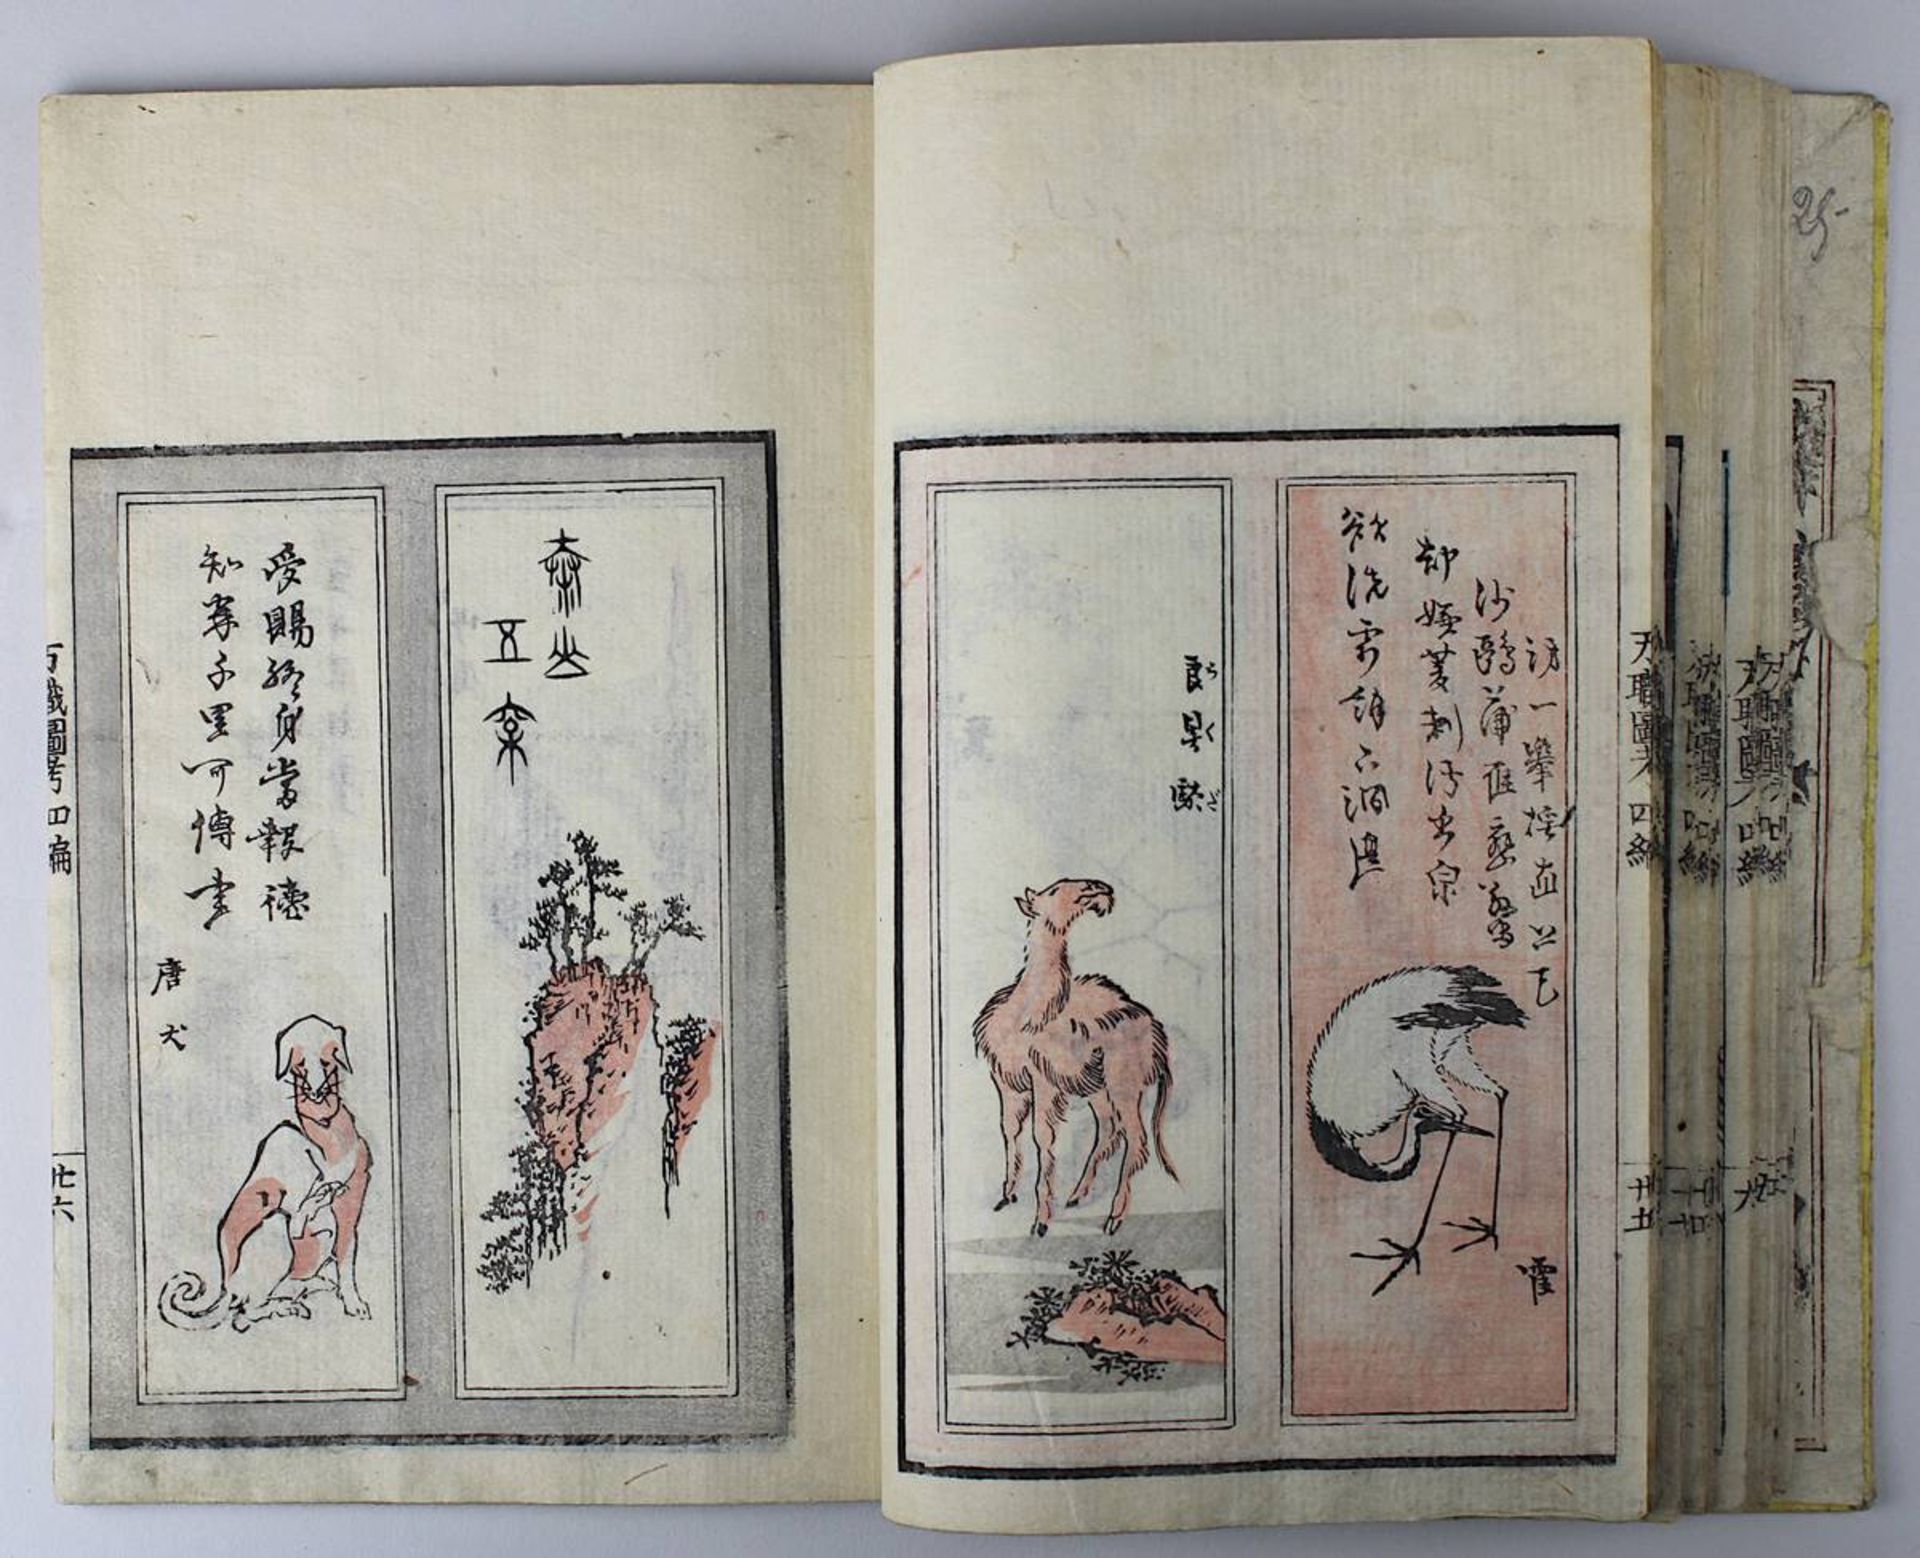 Katsushika Taito (aktiv Japan 1810 - 1853), Holzschnittbuch Banshoku zuko, Bd. 3 von insgesamt 5 - Bild 3 aus 7